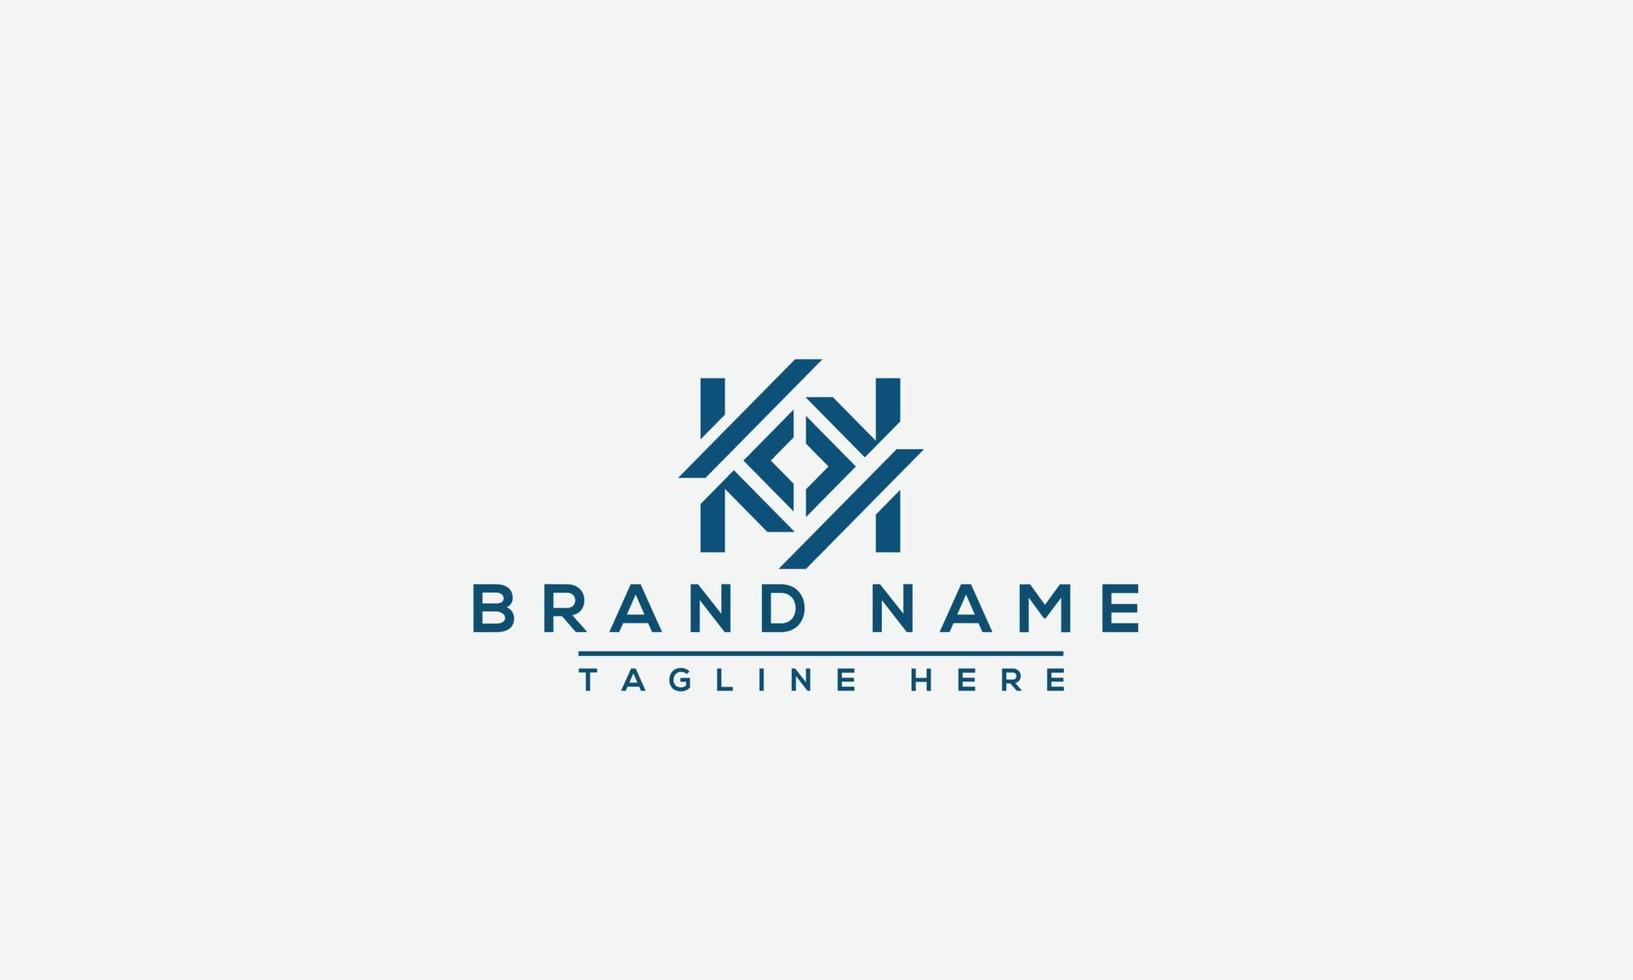 KK Logo Design Template Vector Graphic Branding Element.